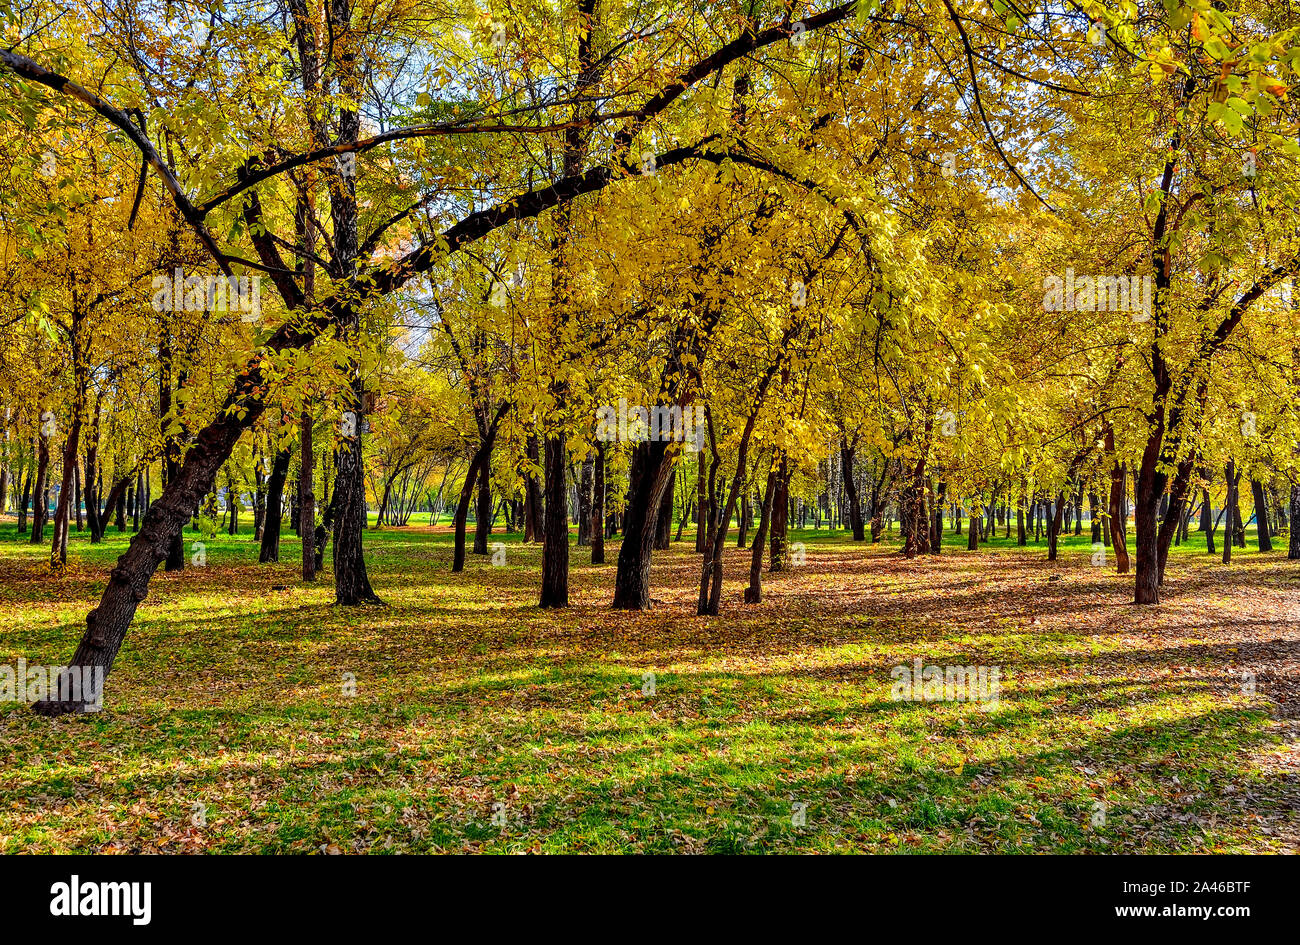 En octobre city park - paysage d'automne très colorés avec des feuilles d'automne multicolore au temps chaud et ensoleillé. Beauté de la nature concept d'automne Banque D'Images